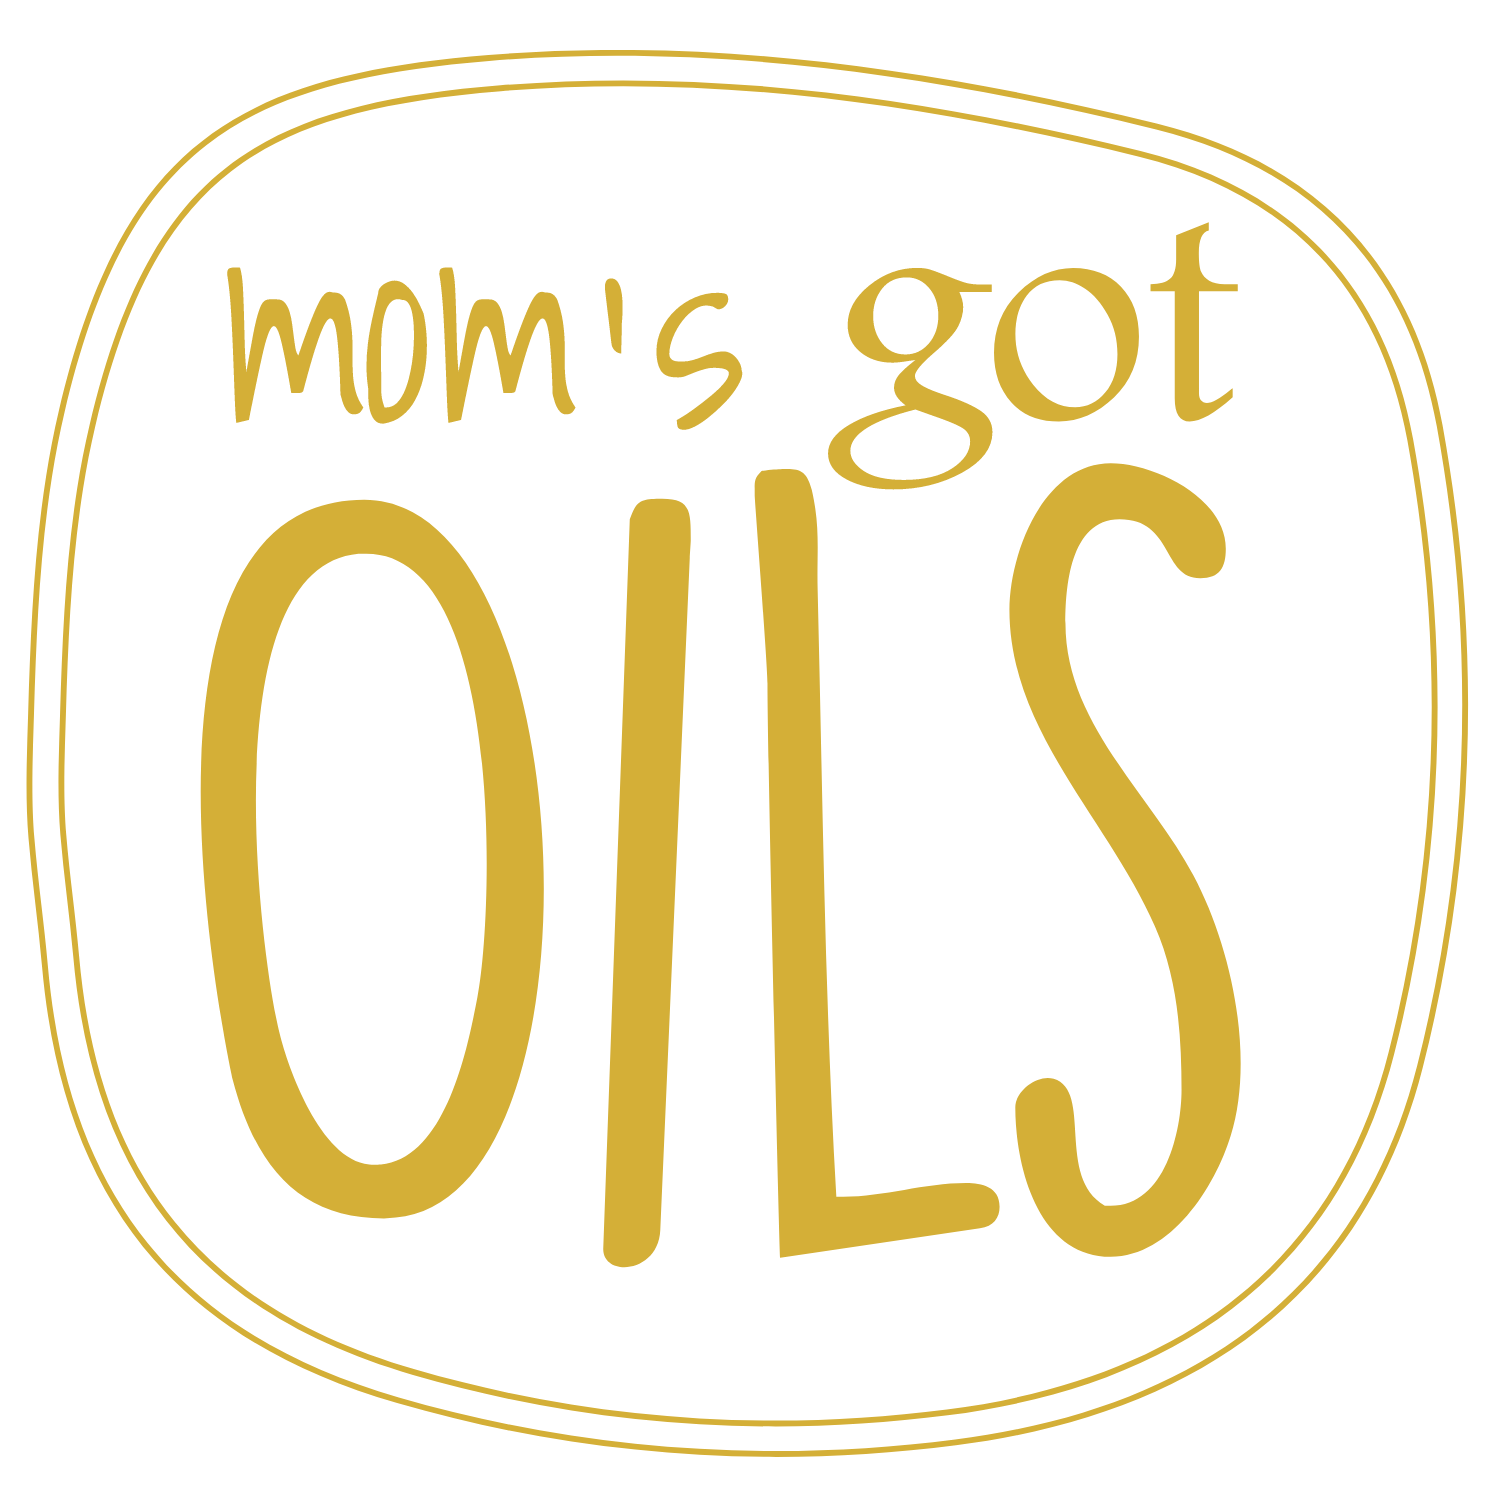 Mom's Got Oils logo (image)